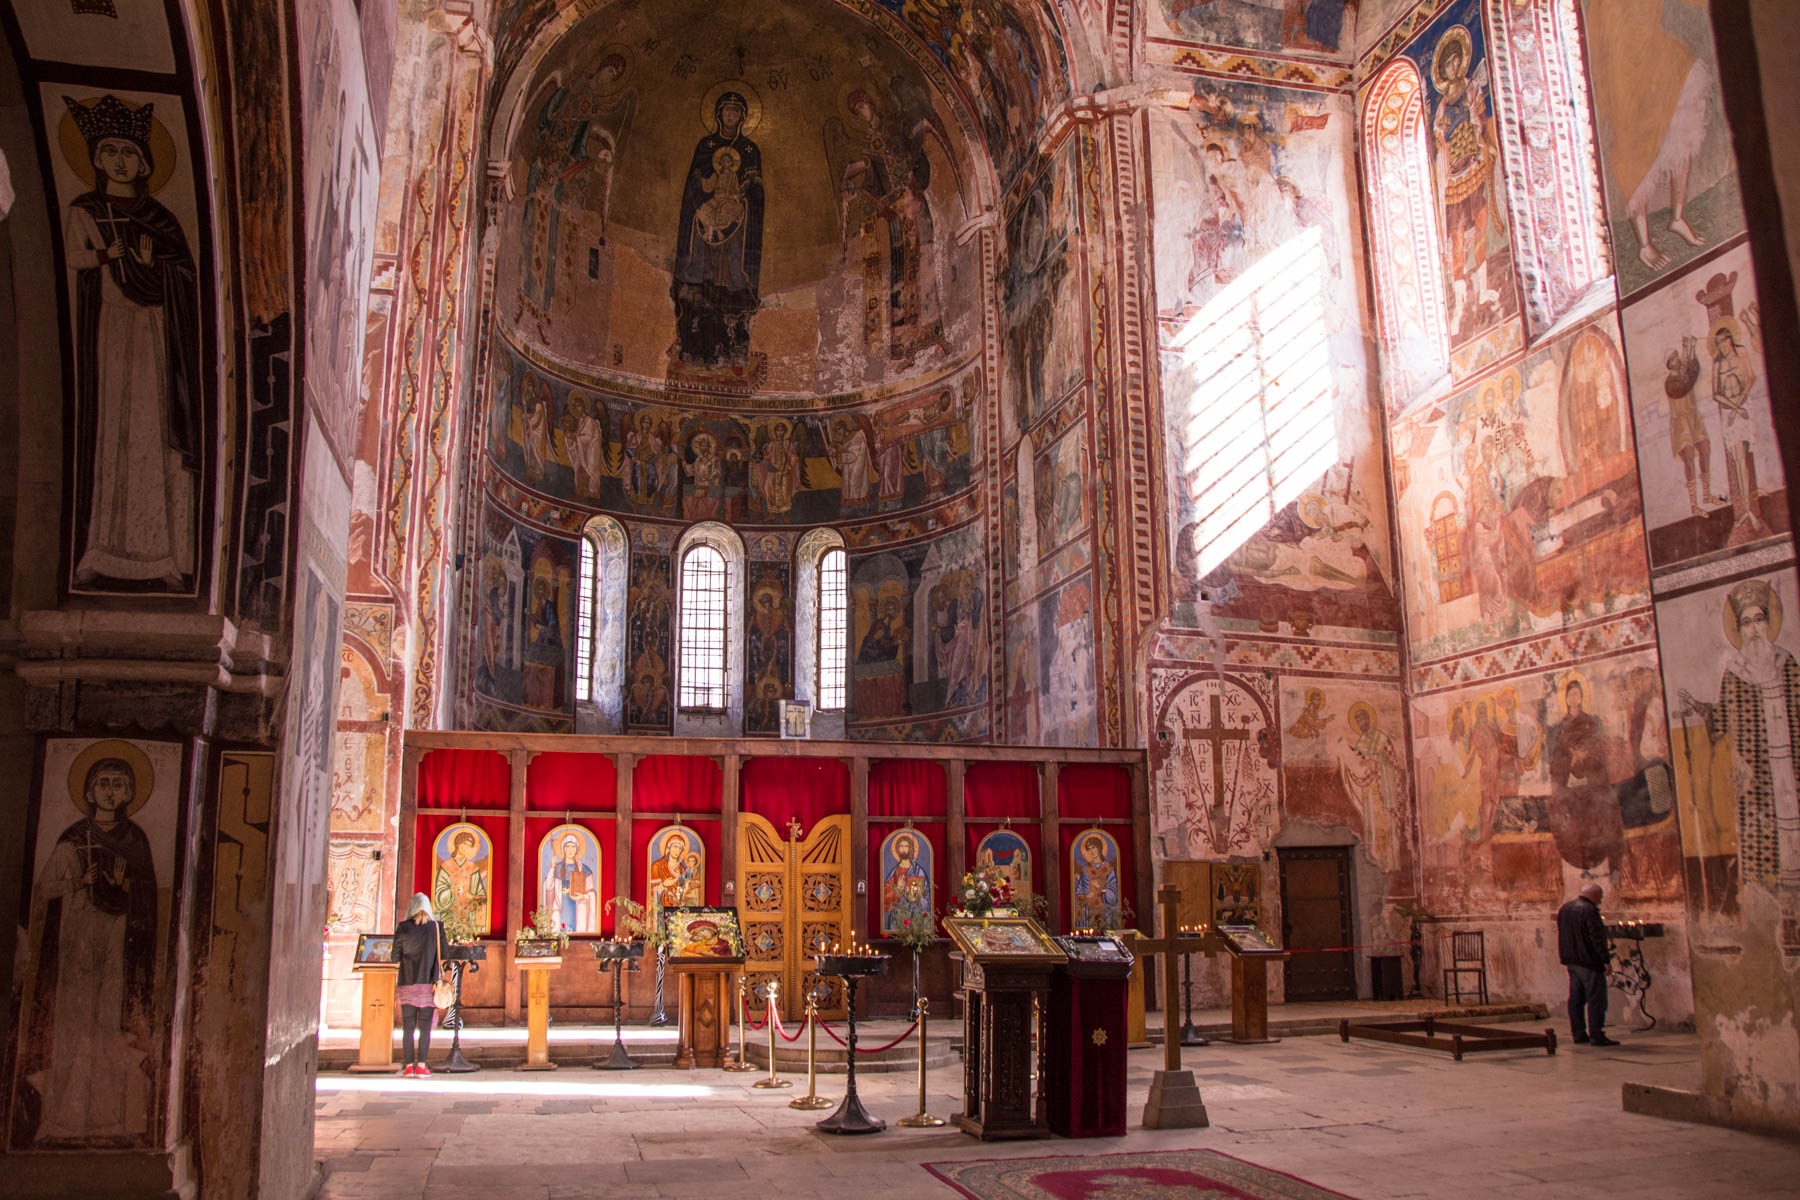 The interior of the stunning Gelati monastery in Kutaisi, Georgia - Lost With Purpose